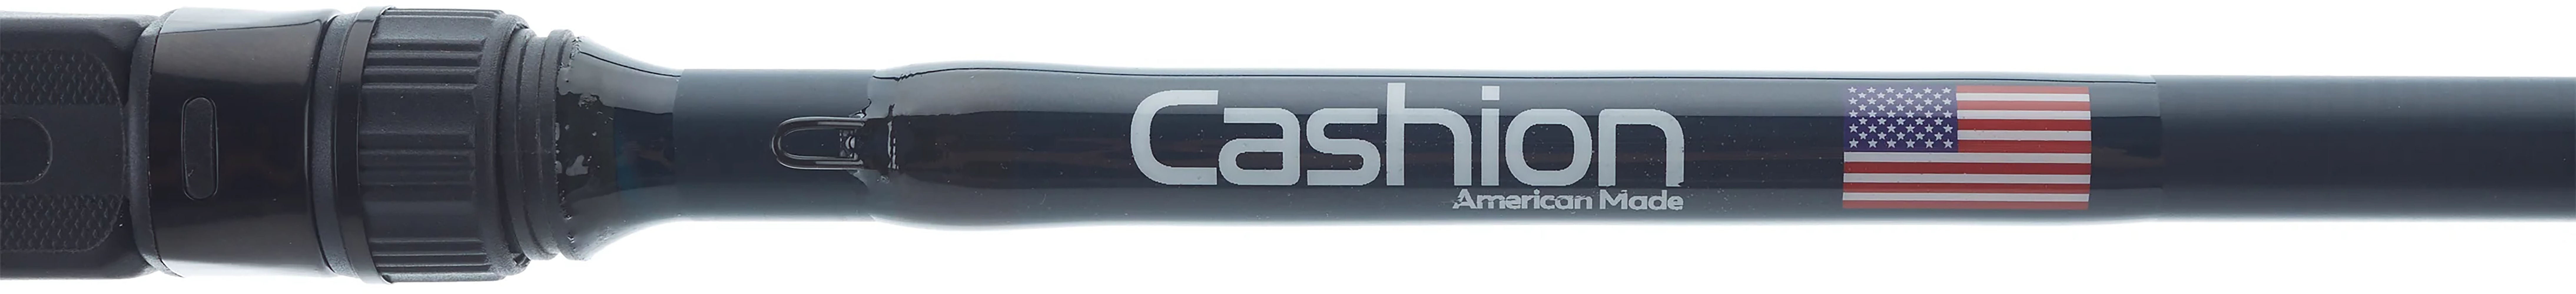 Cashion ELEMENT Series BFS Casting Rod